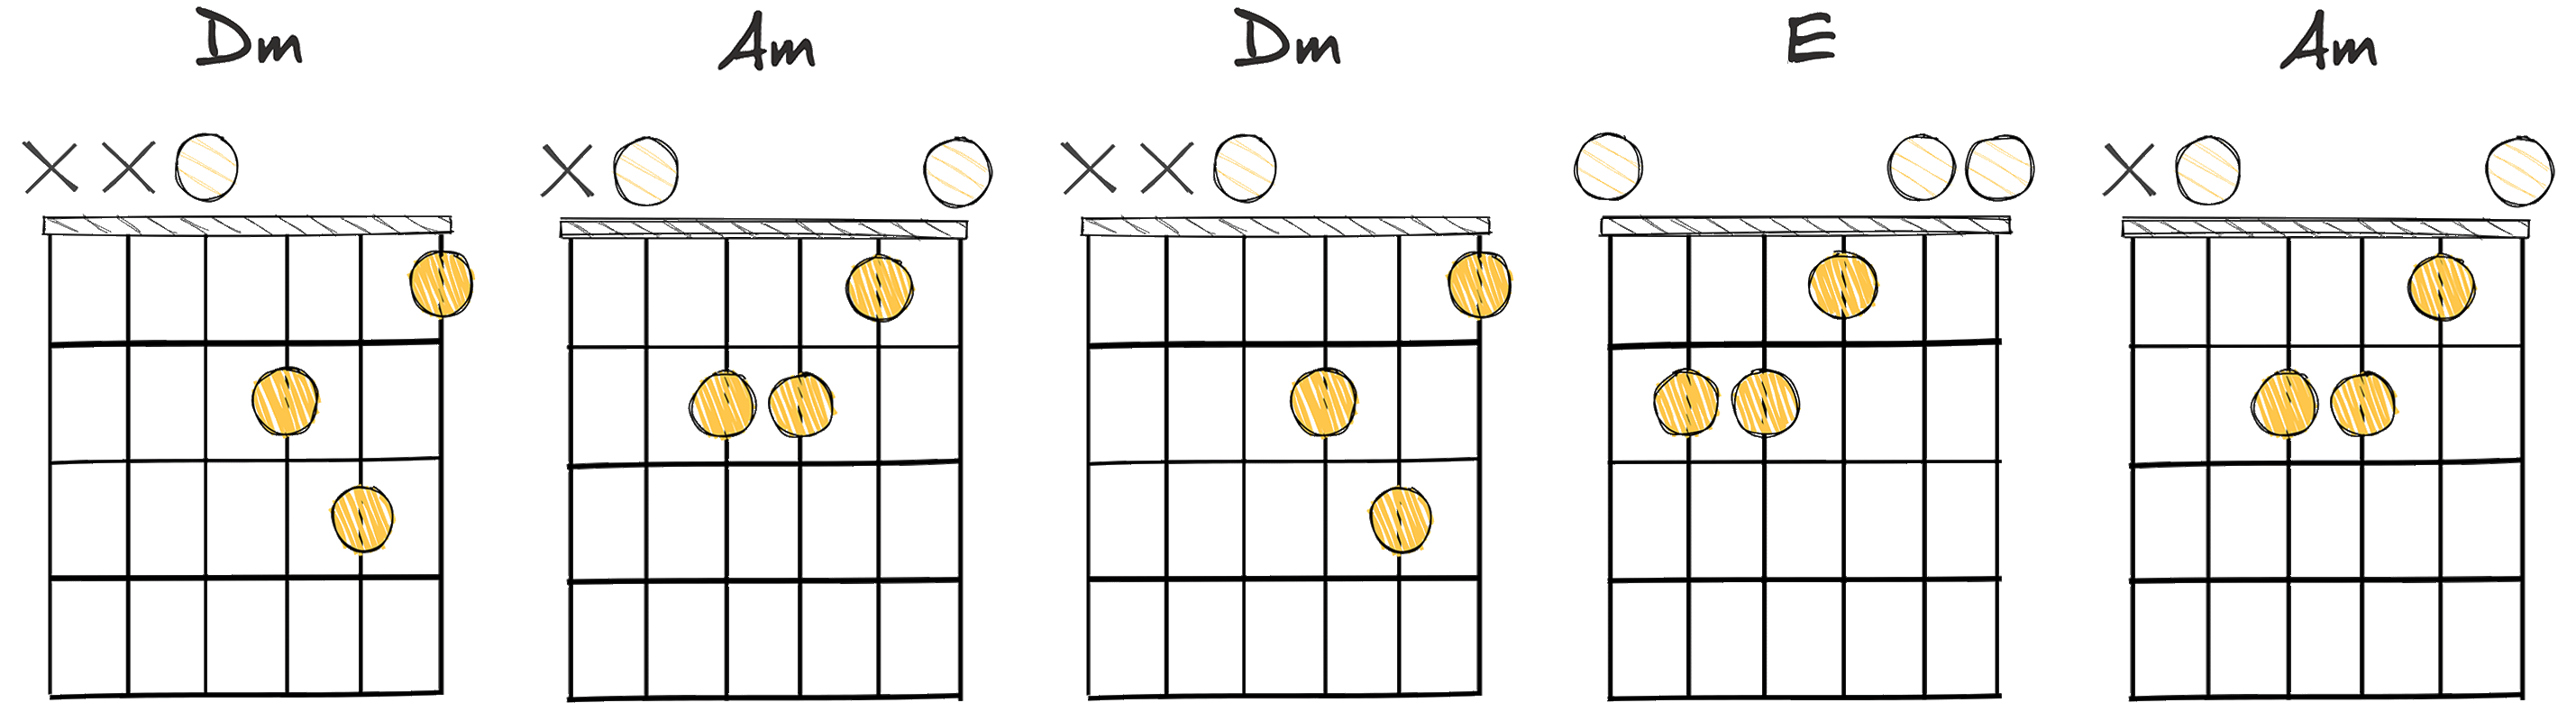 ii-vi-ii-III-vi (2-6-2-3-6) chords diagram